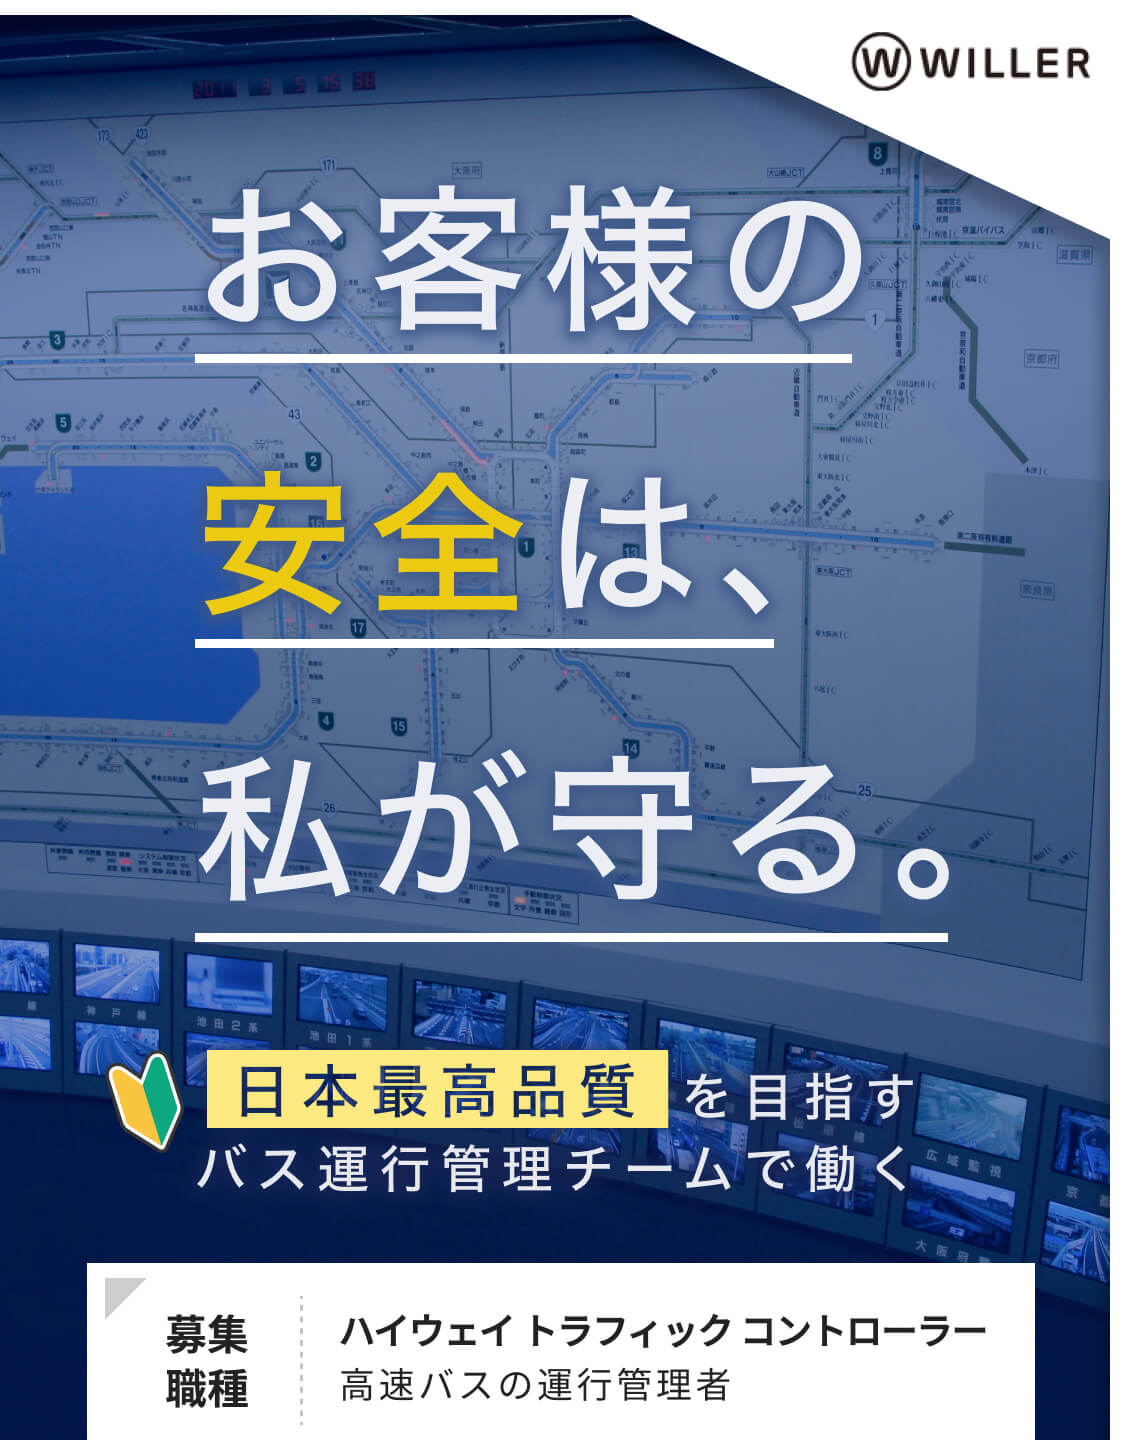 お客様の安全は、私が守る。日本最高品質を目指すバス運行管理チームで働く求人。募集職種・ハイウェイトラフィックコントローラー 高速バスの運行管理者｜WILLER EXPRESS